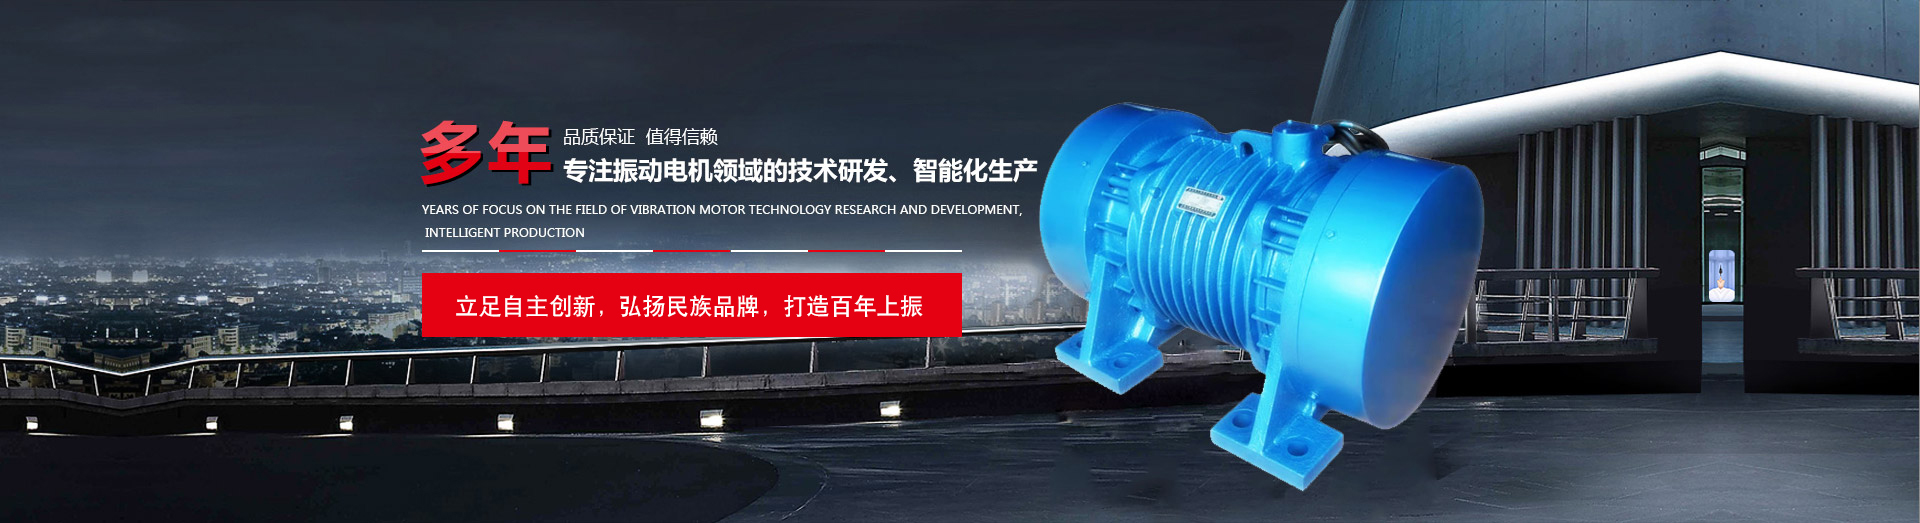 Zhejiang Shangzhen Motor Co., Ltd